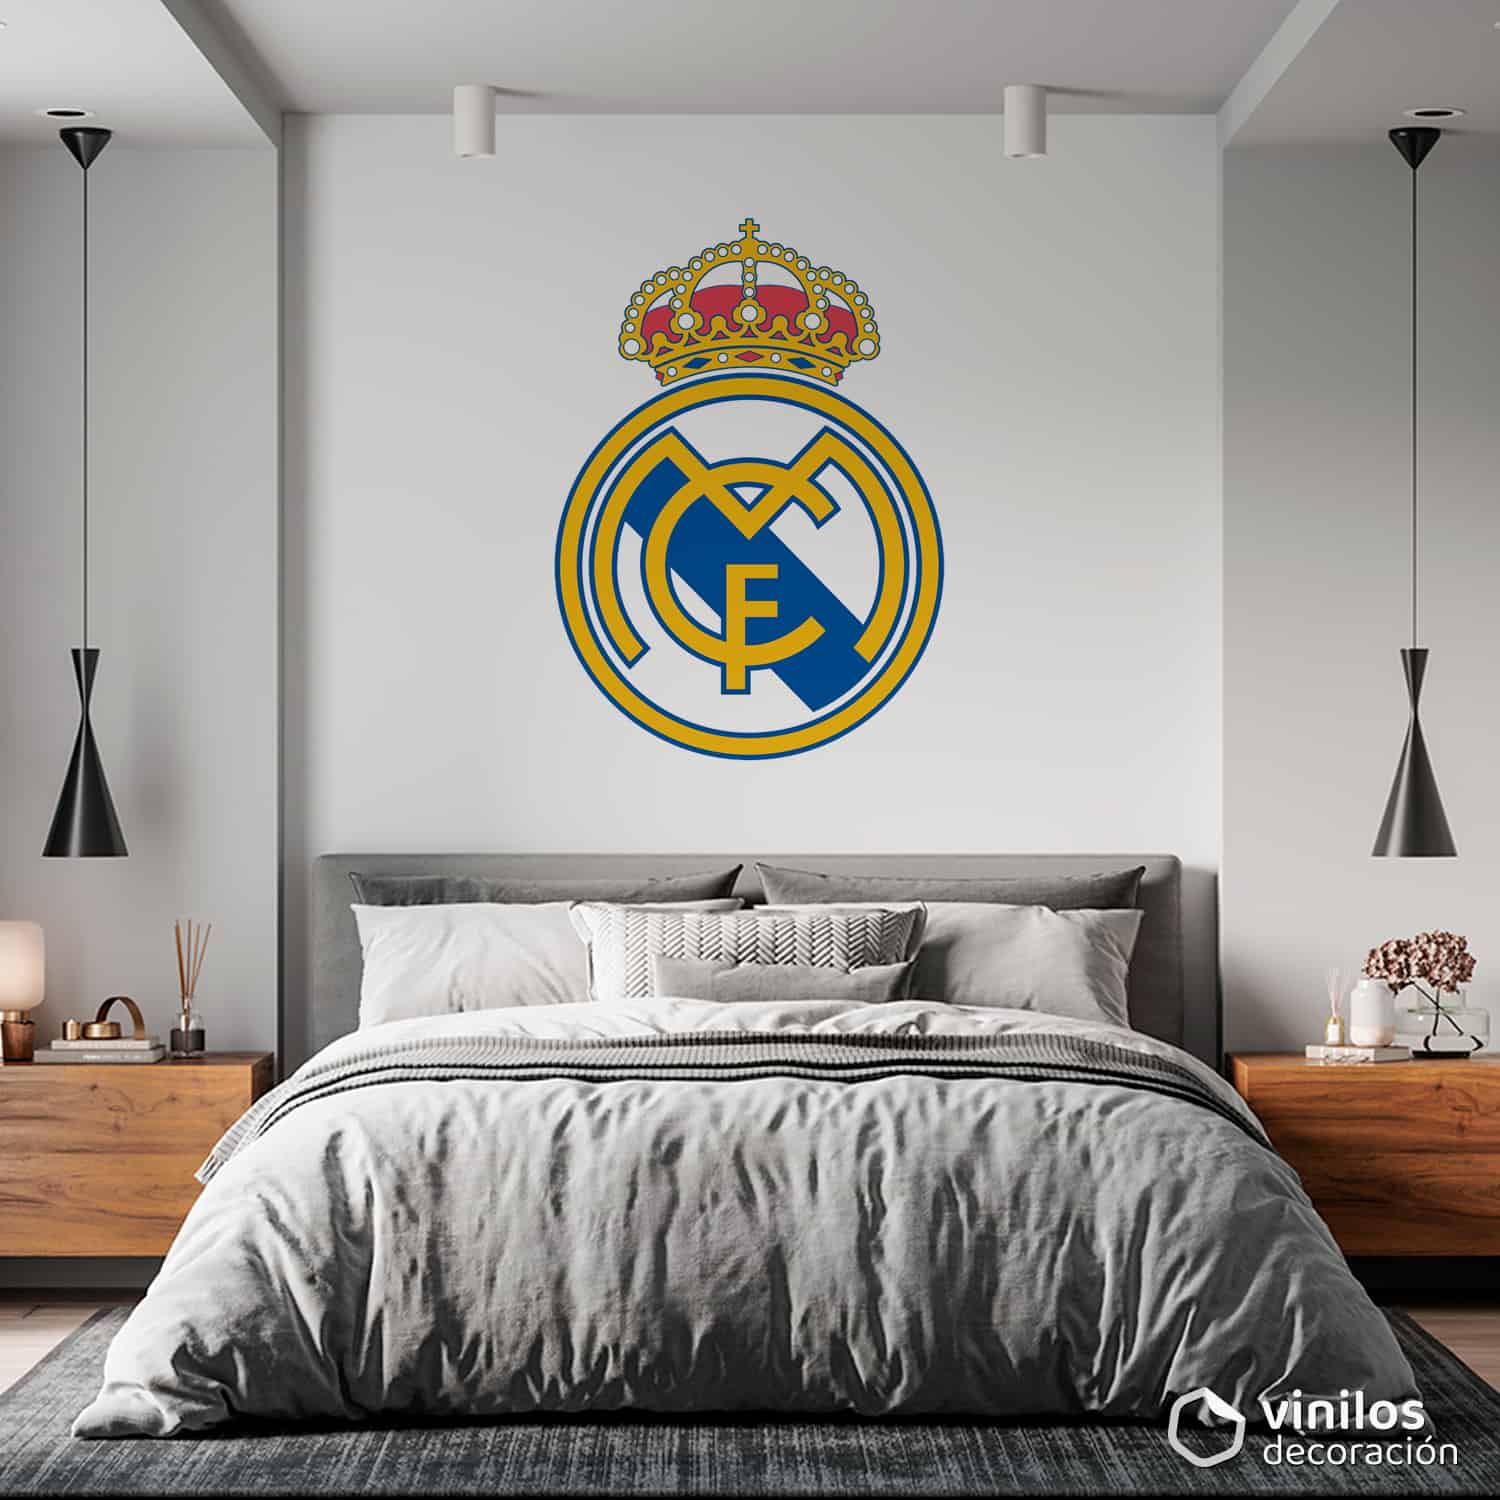 Vinilo decorativo del escudo del Real Madrid